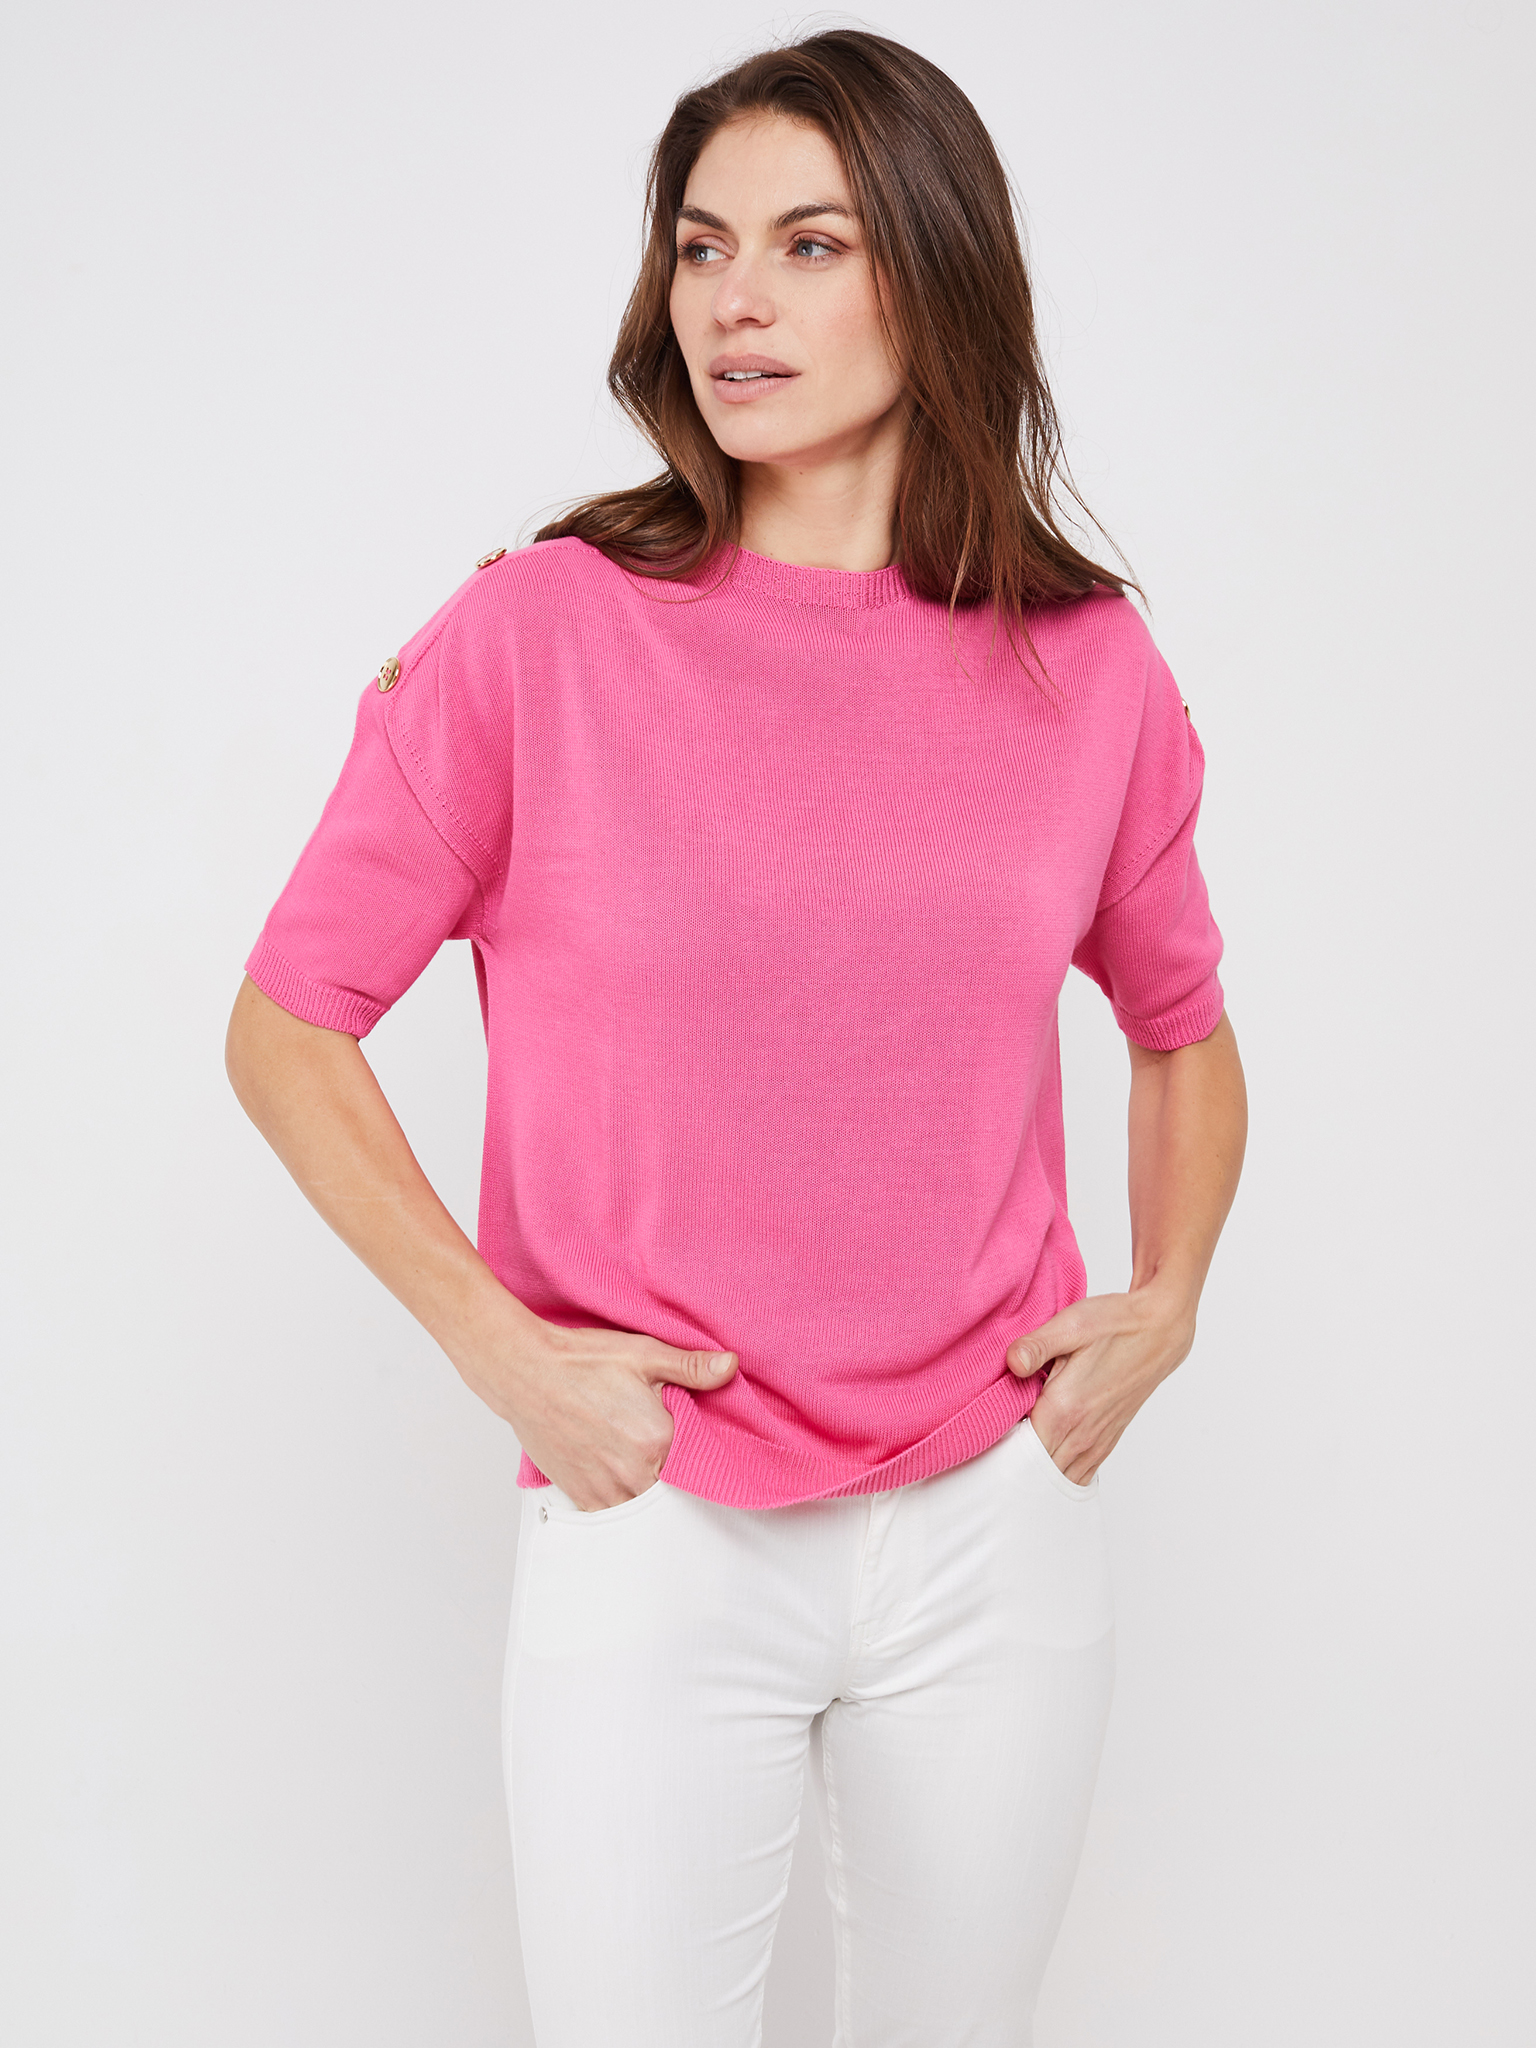 Pullover Pink mit kurzen Armen und goldenen Zierknöpfen